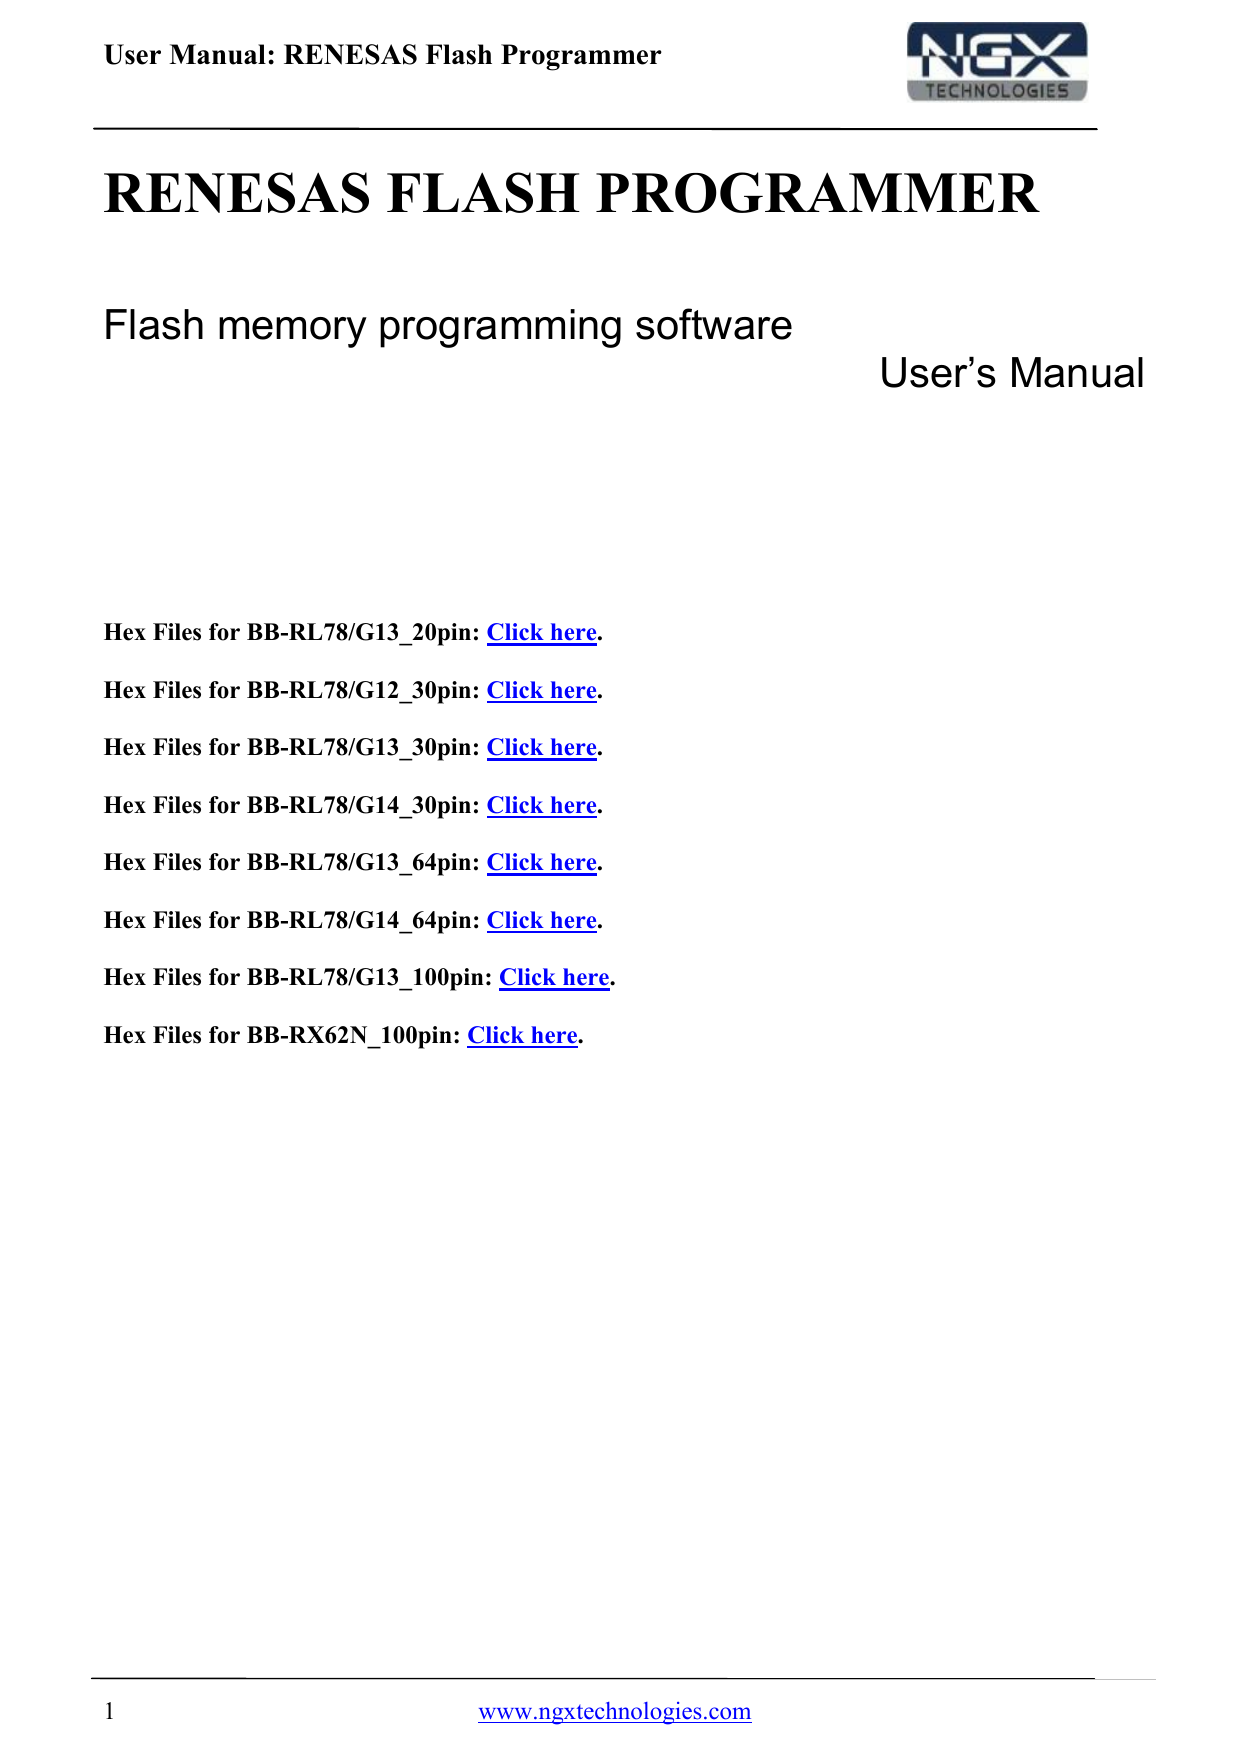 Renesas Flash Programmer User Manual Manualzz